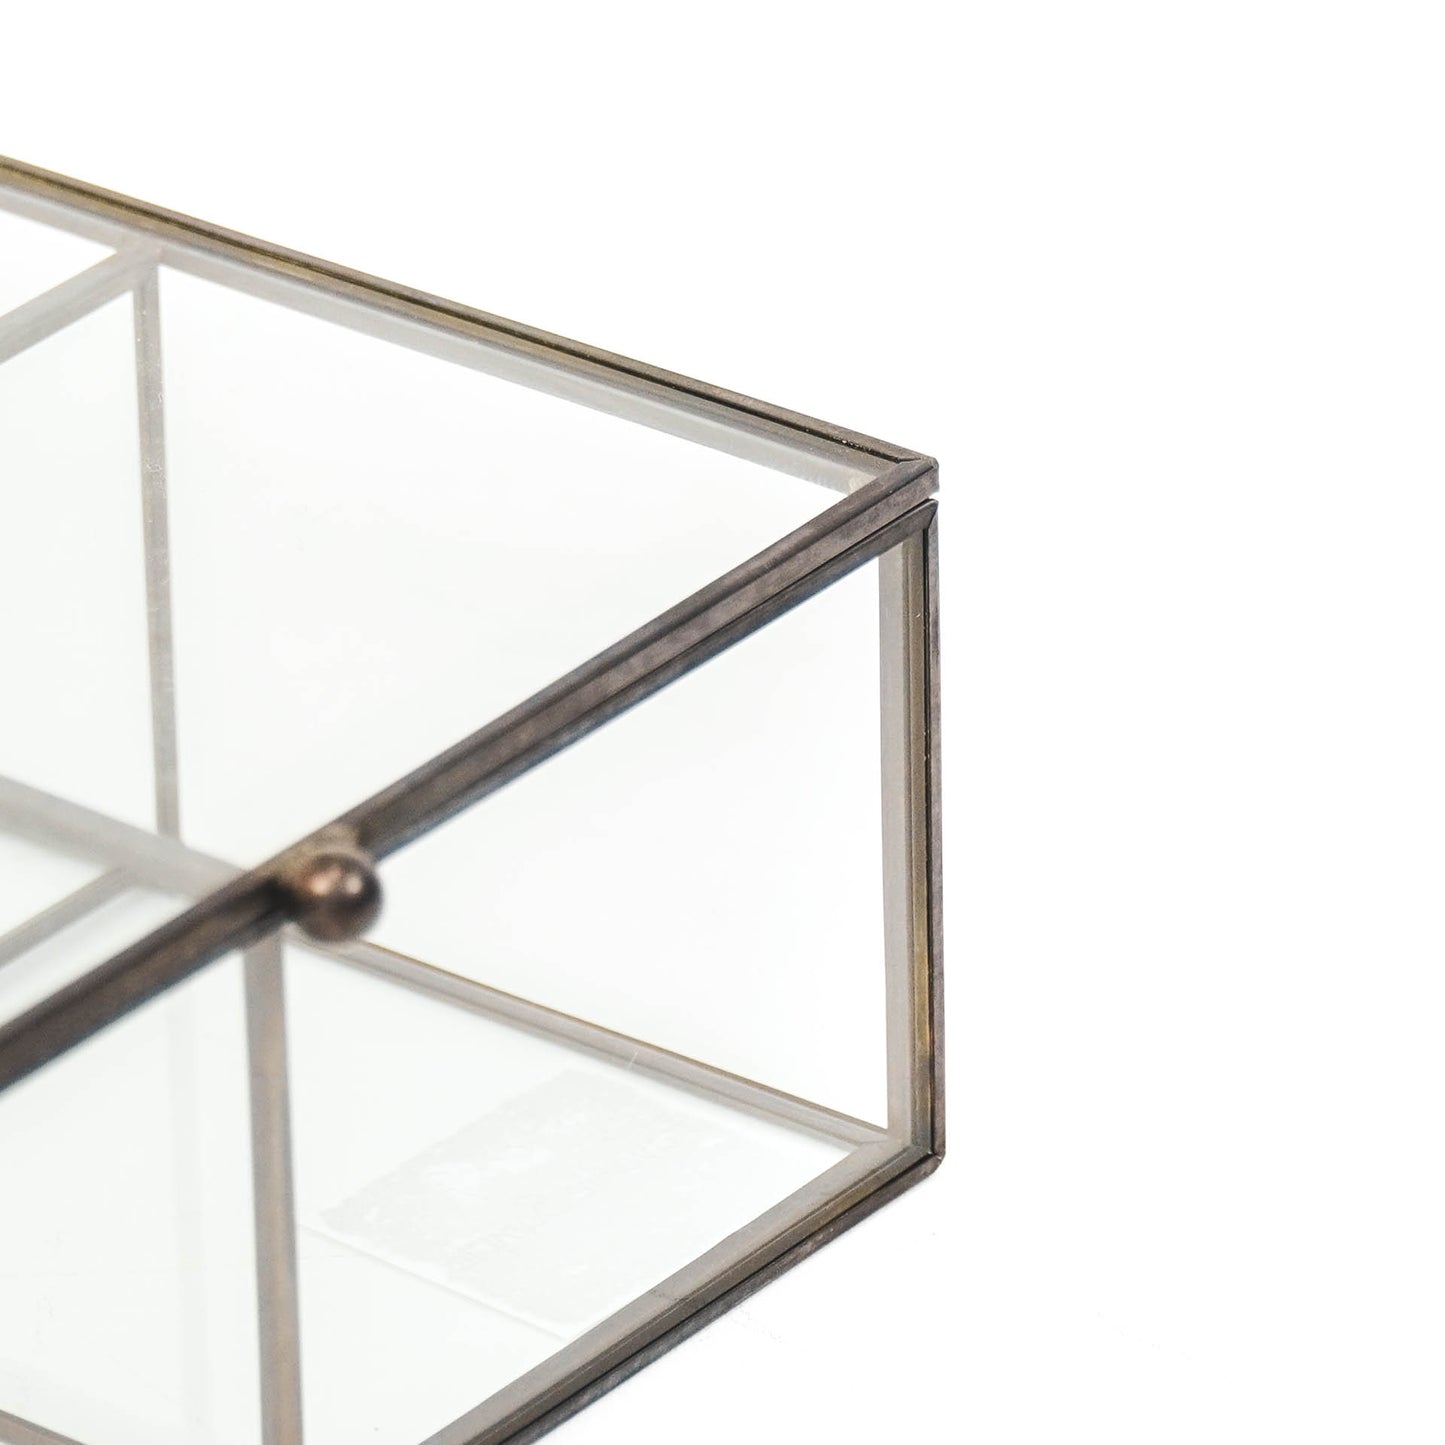 HV Box Glass - Black - 16x16x6,5cm